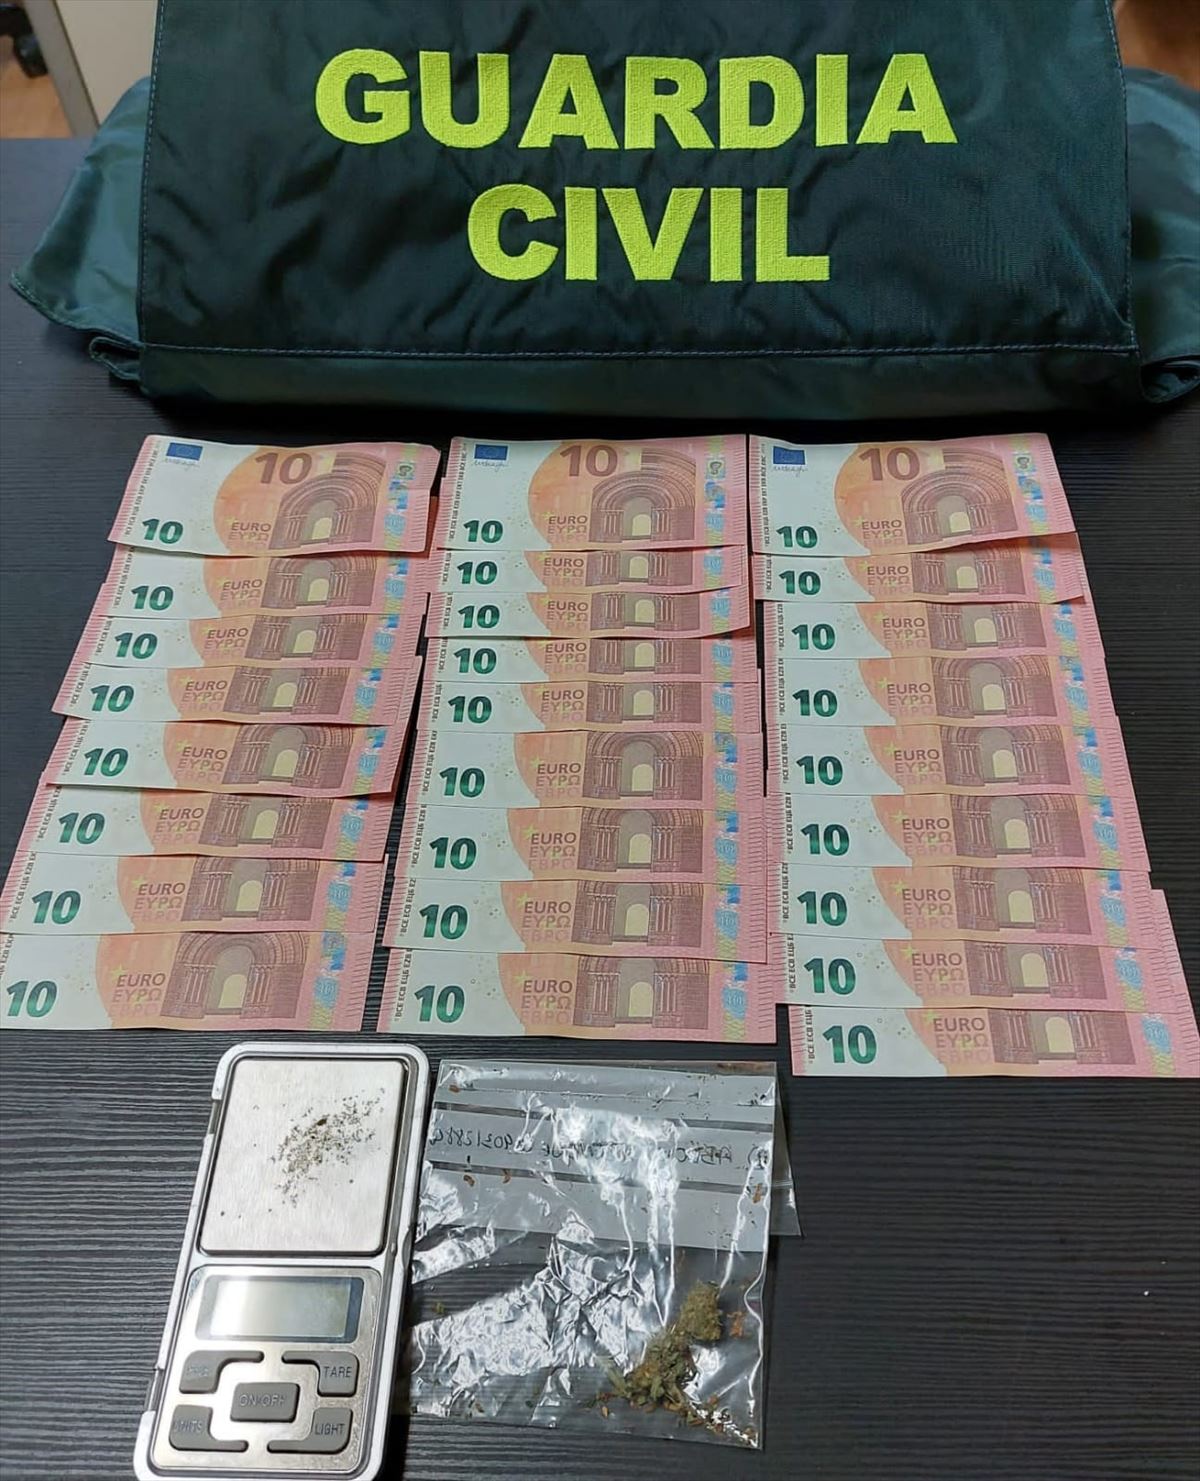 Billetes falsos de 10 euros localizados al arrestado